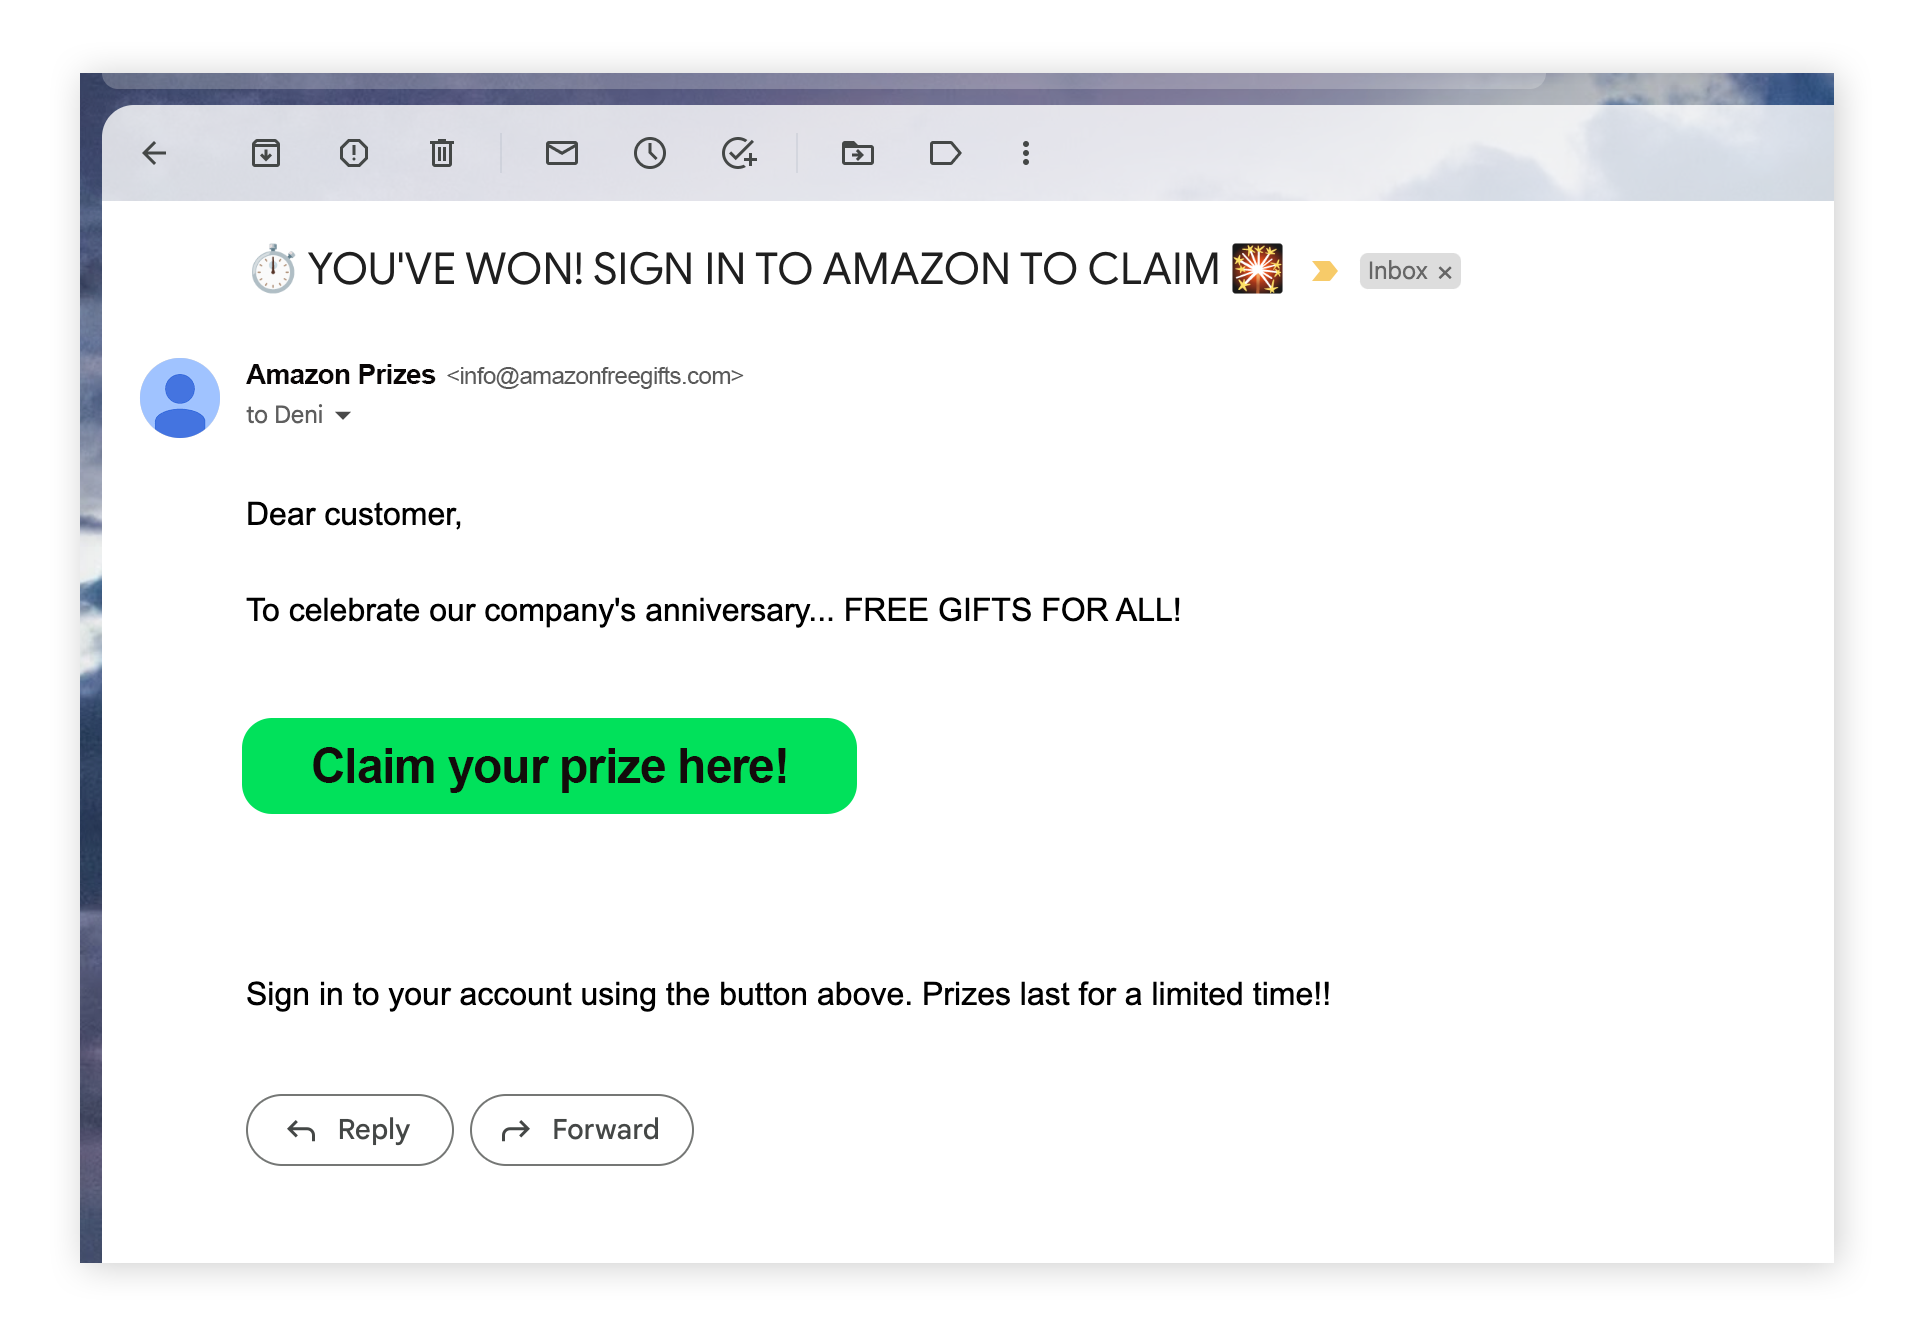 Os golpes de phishing no Amazon geralmente afirmam que você ganhou um prêmio e pedem para clicar em um link malicioso.